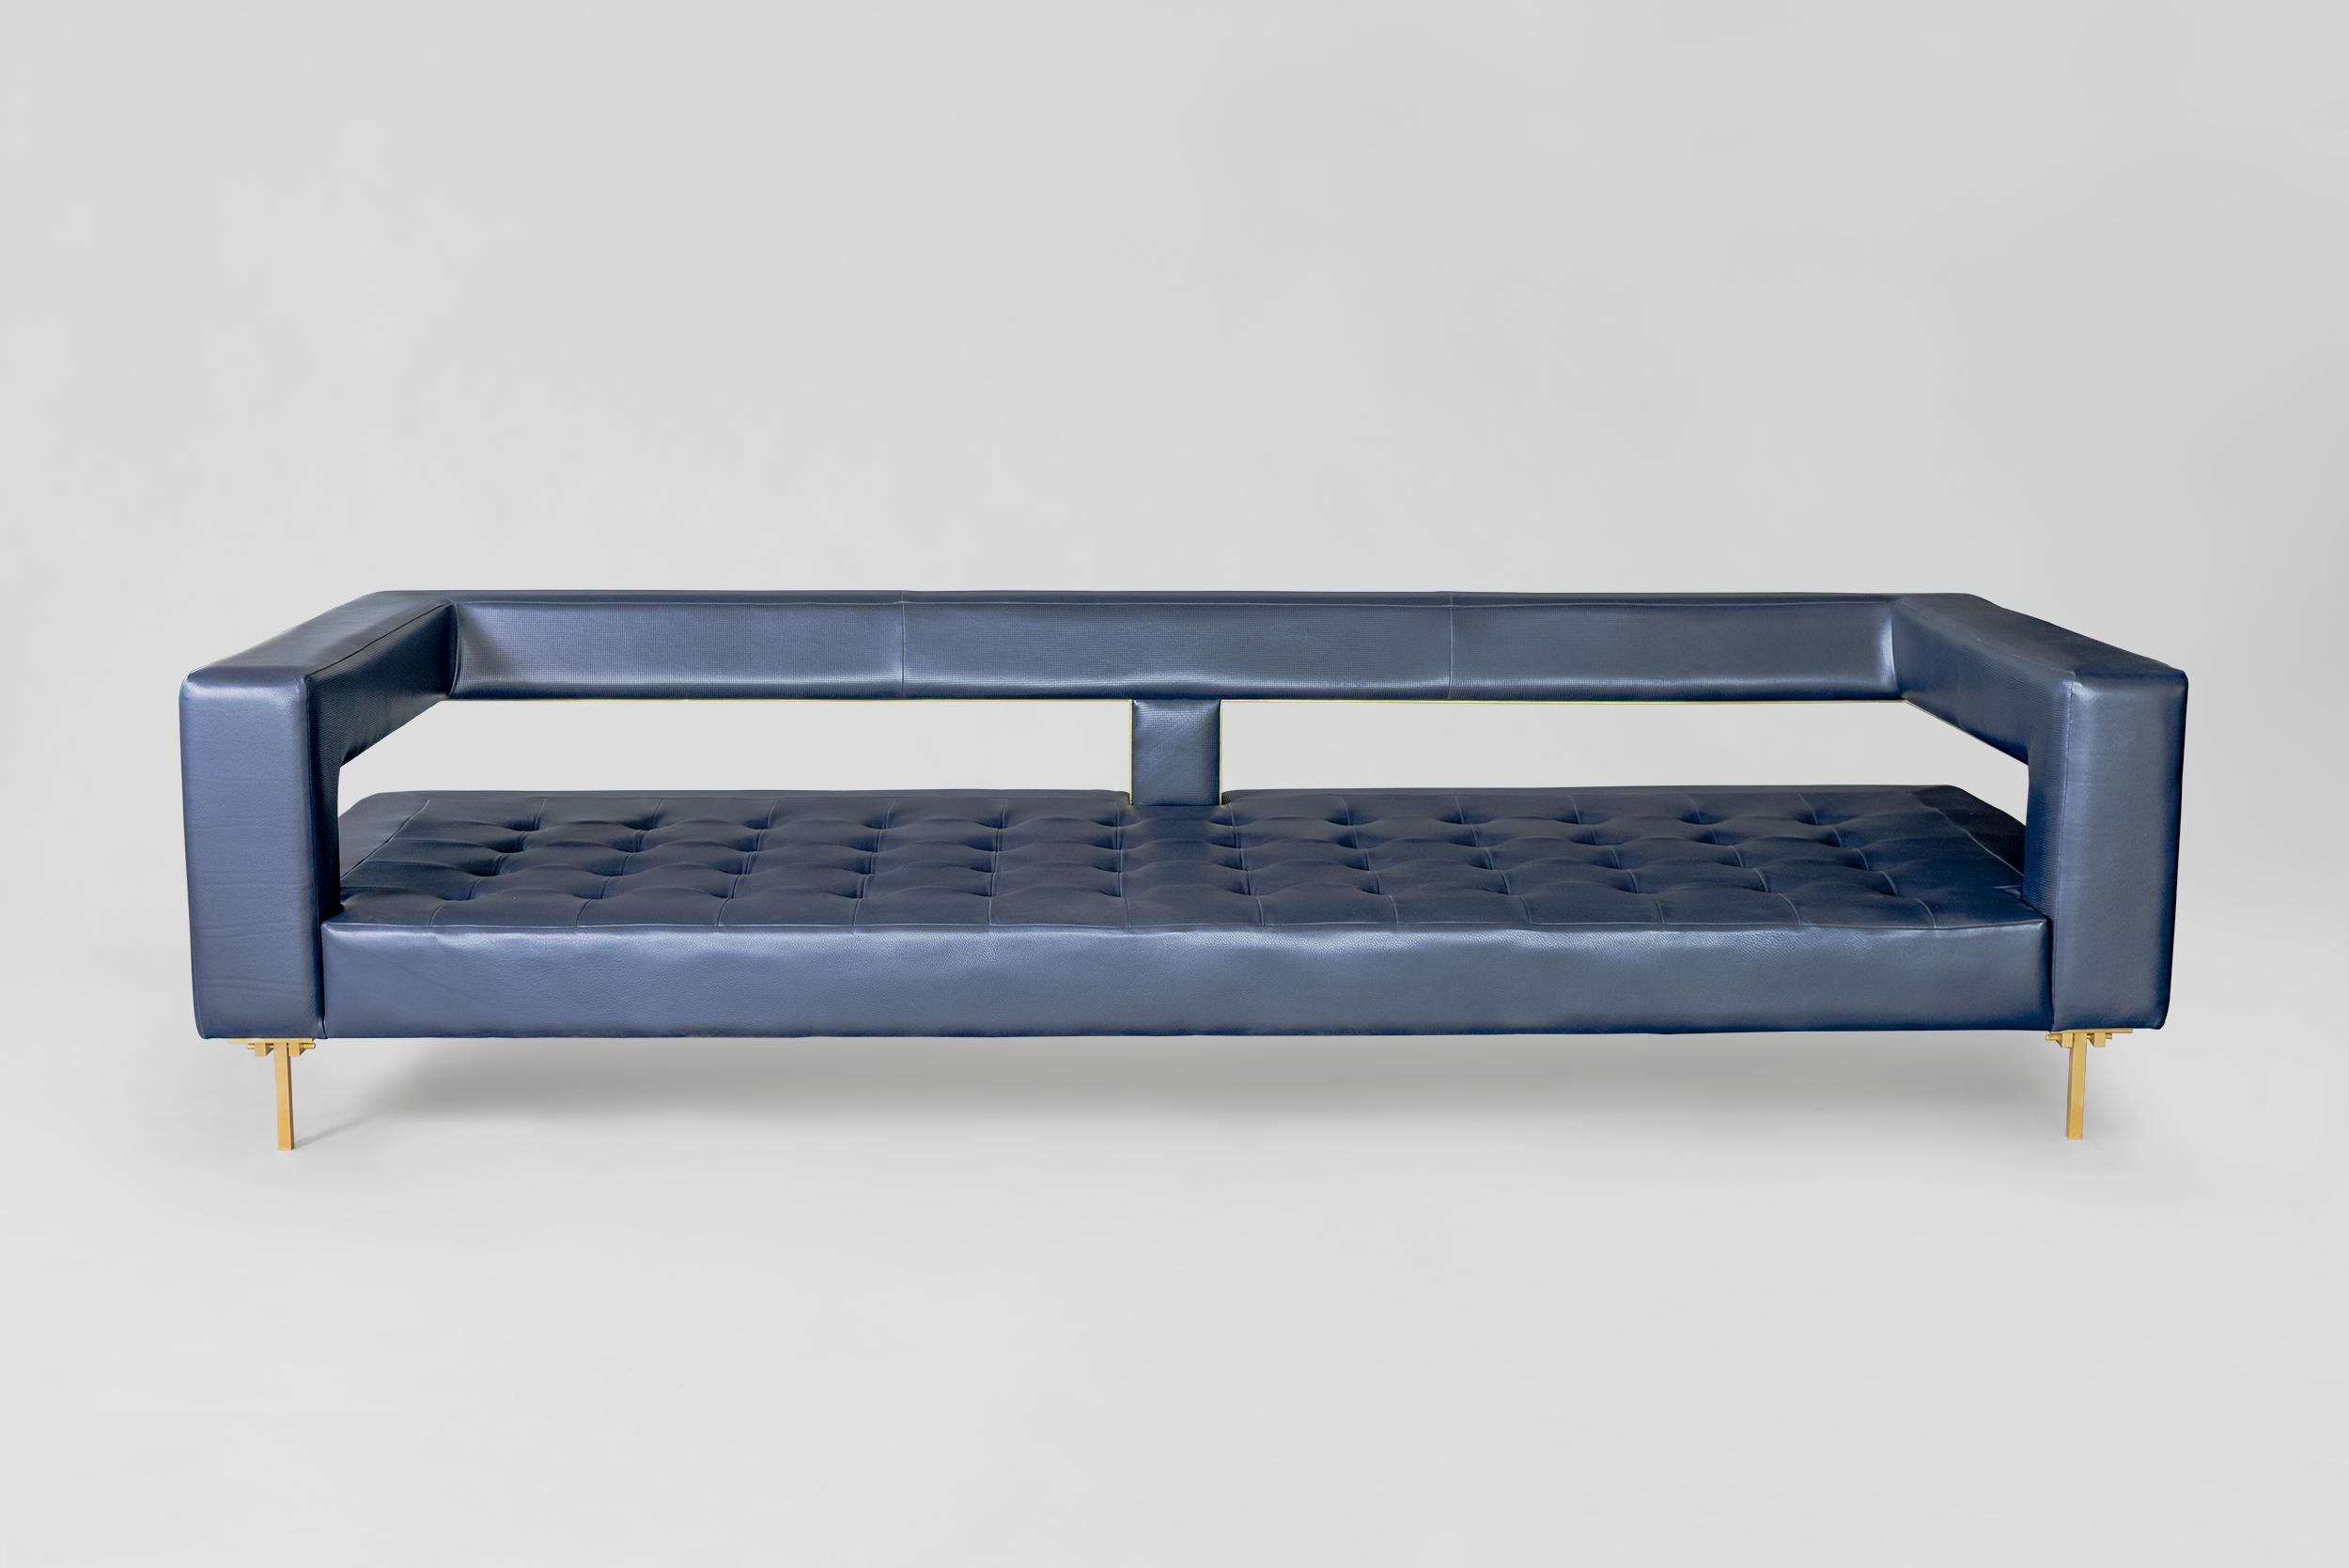 Canapé Blue Air d'Atra Design
Dimensions : D 240 x L 90,5 x H 60,3 cm
Matériaux : cuir, laiton
Disponible dans d'autres couleurs.

Atra Design
Nous sommes Atra, une marque de meubles produite par Atra form A, un site de production haut de